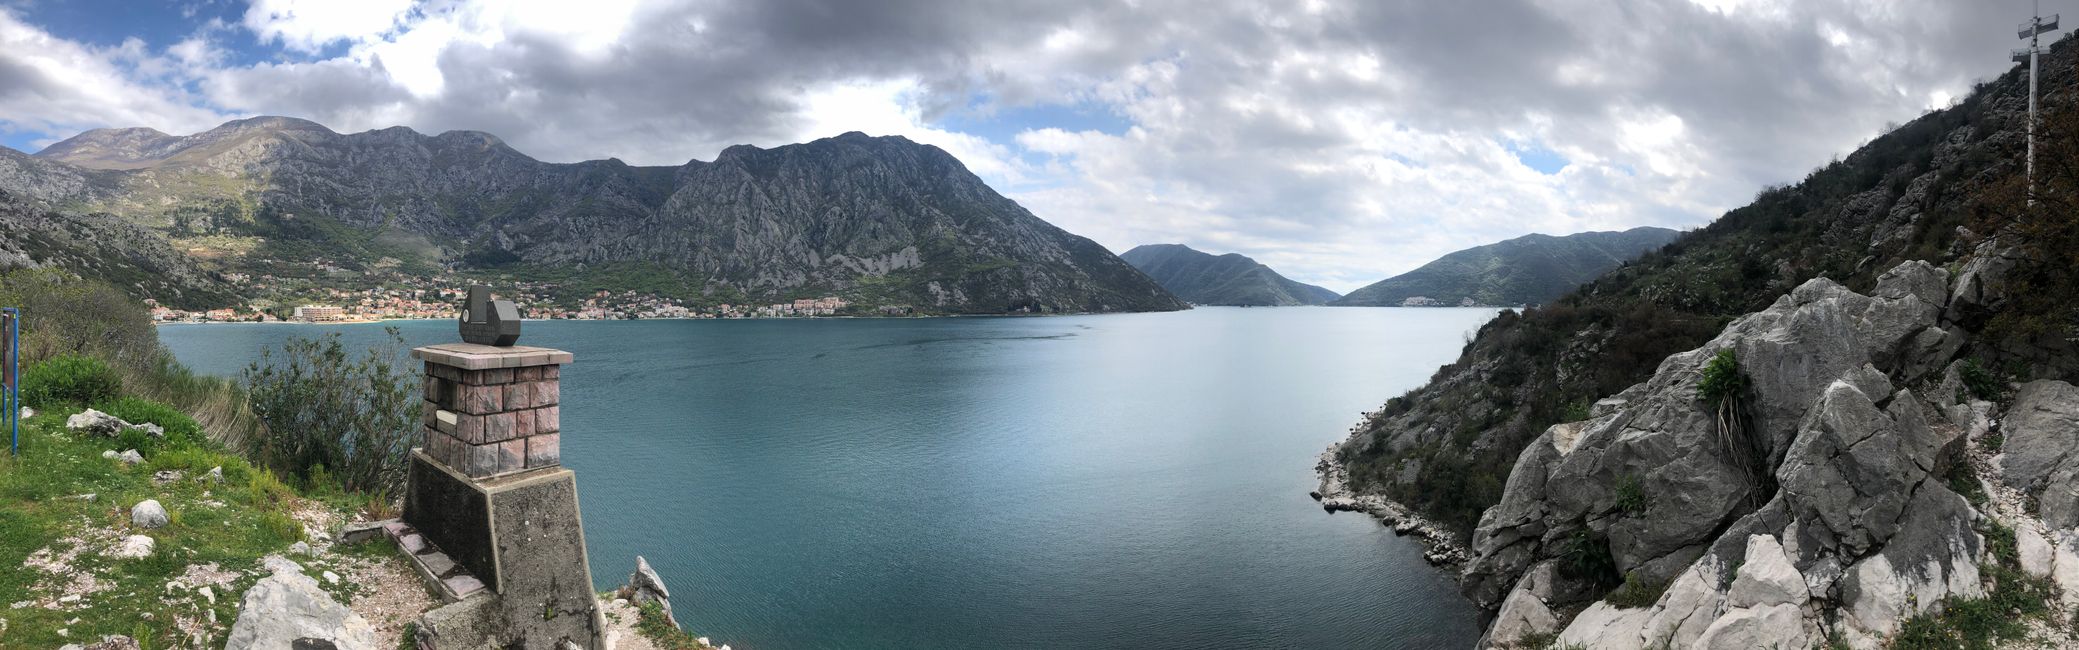 Die Landschaft von Montenegro ist wunderschön!